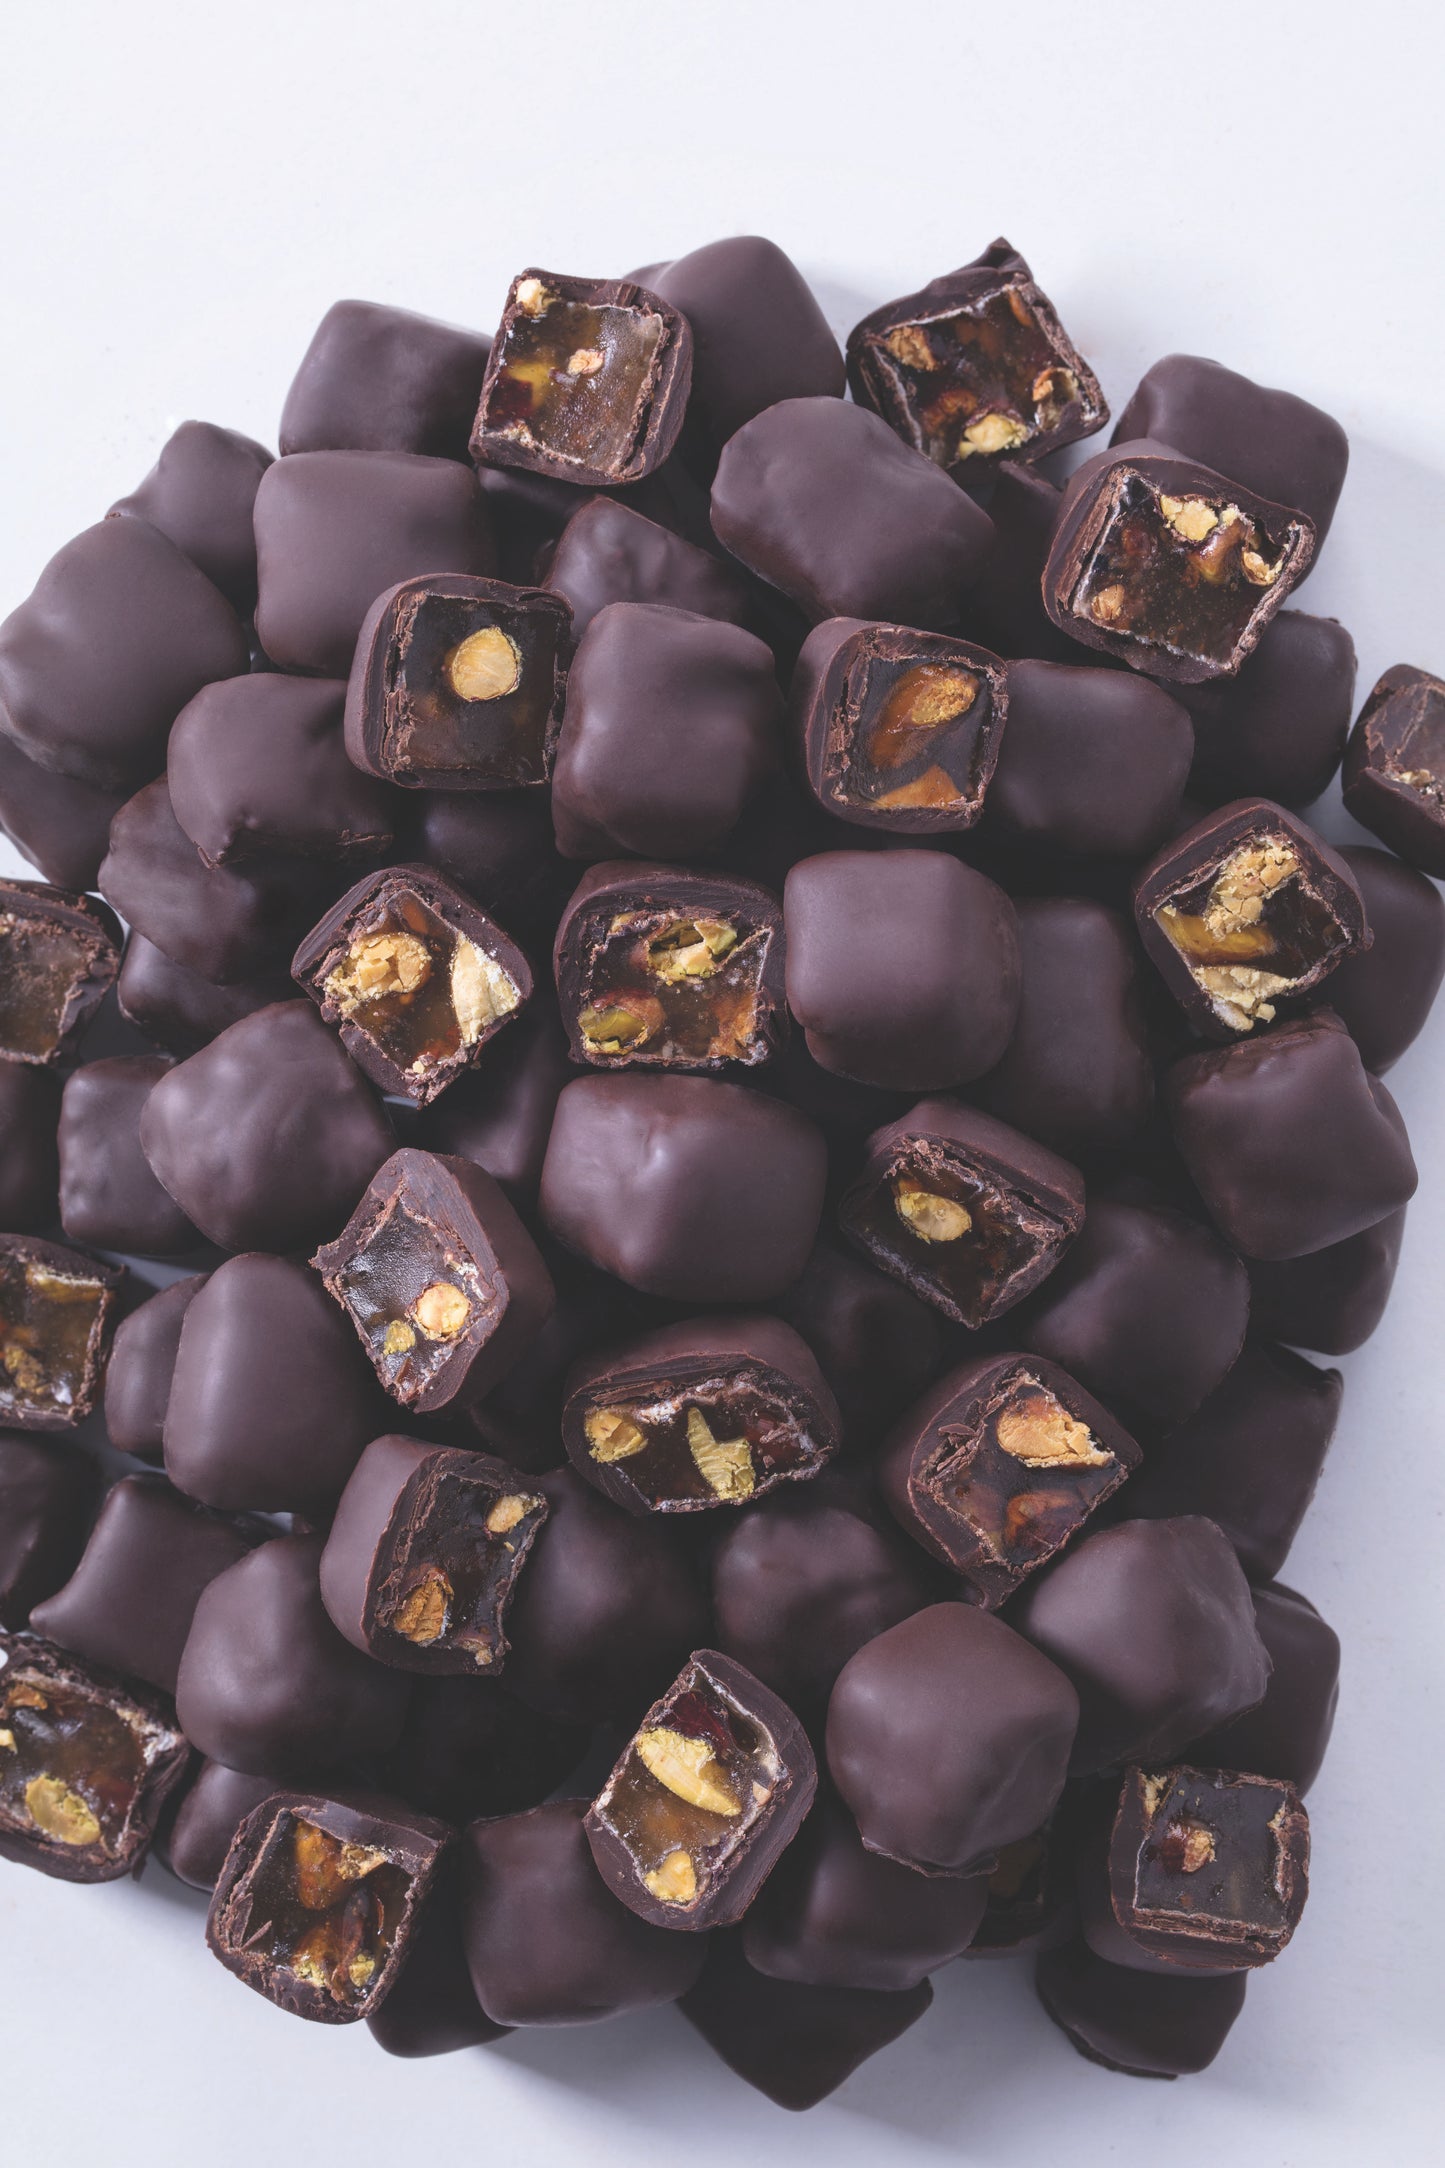 
                  
                    Divan Luxury Turkish Delights - Dark Chocolate Coated Pistachio
                  
                